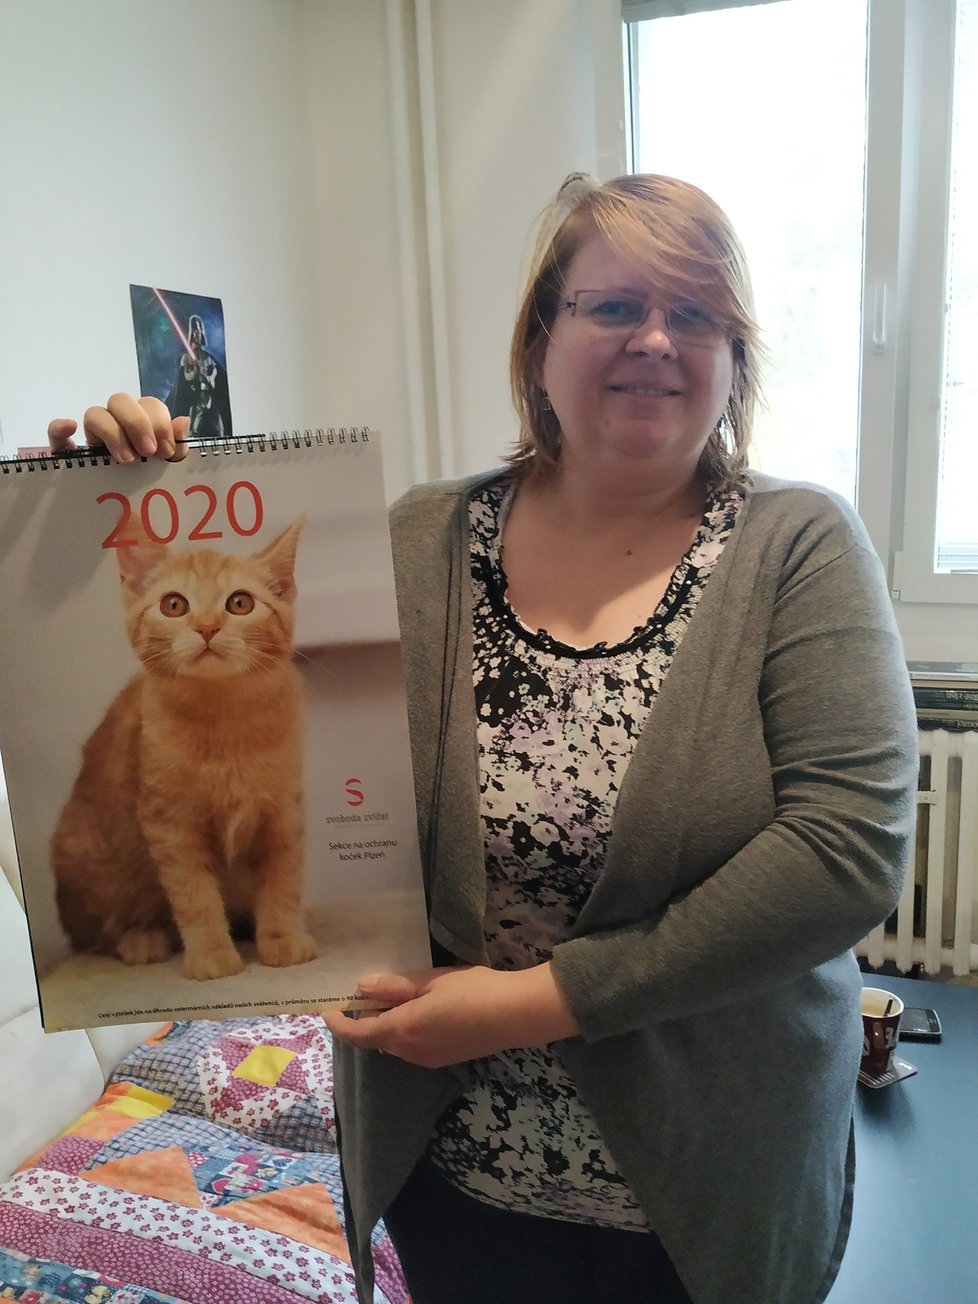 Předsedkyně sekce Věra Matasová ukázala charitativní kalendář. Výtěžek z jeho prodeje je určen na veterinární péči pro nalezené kočky.